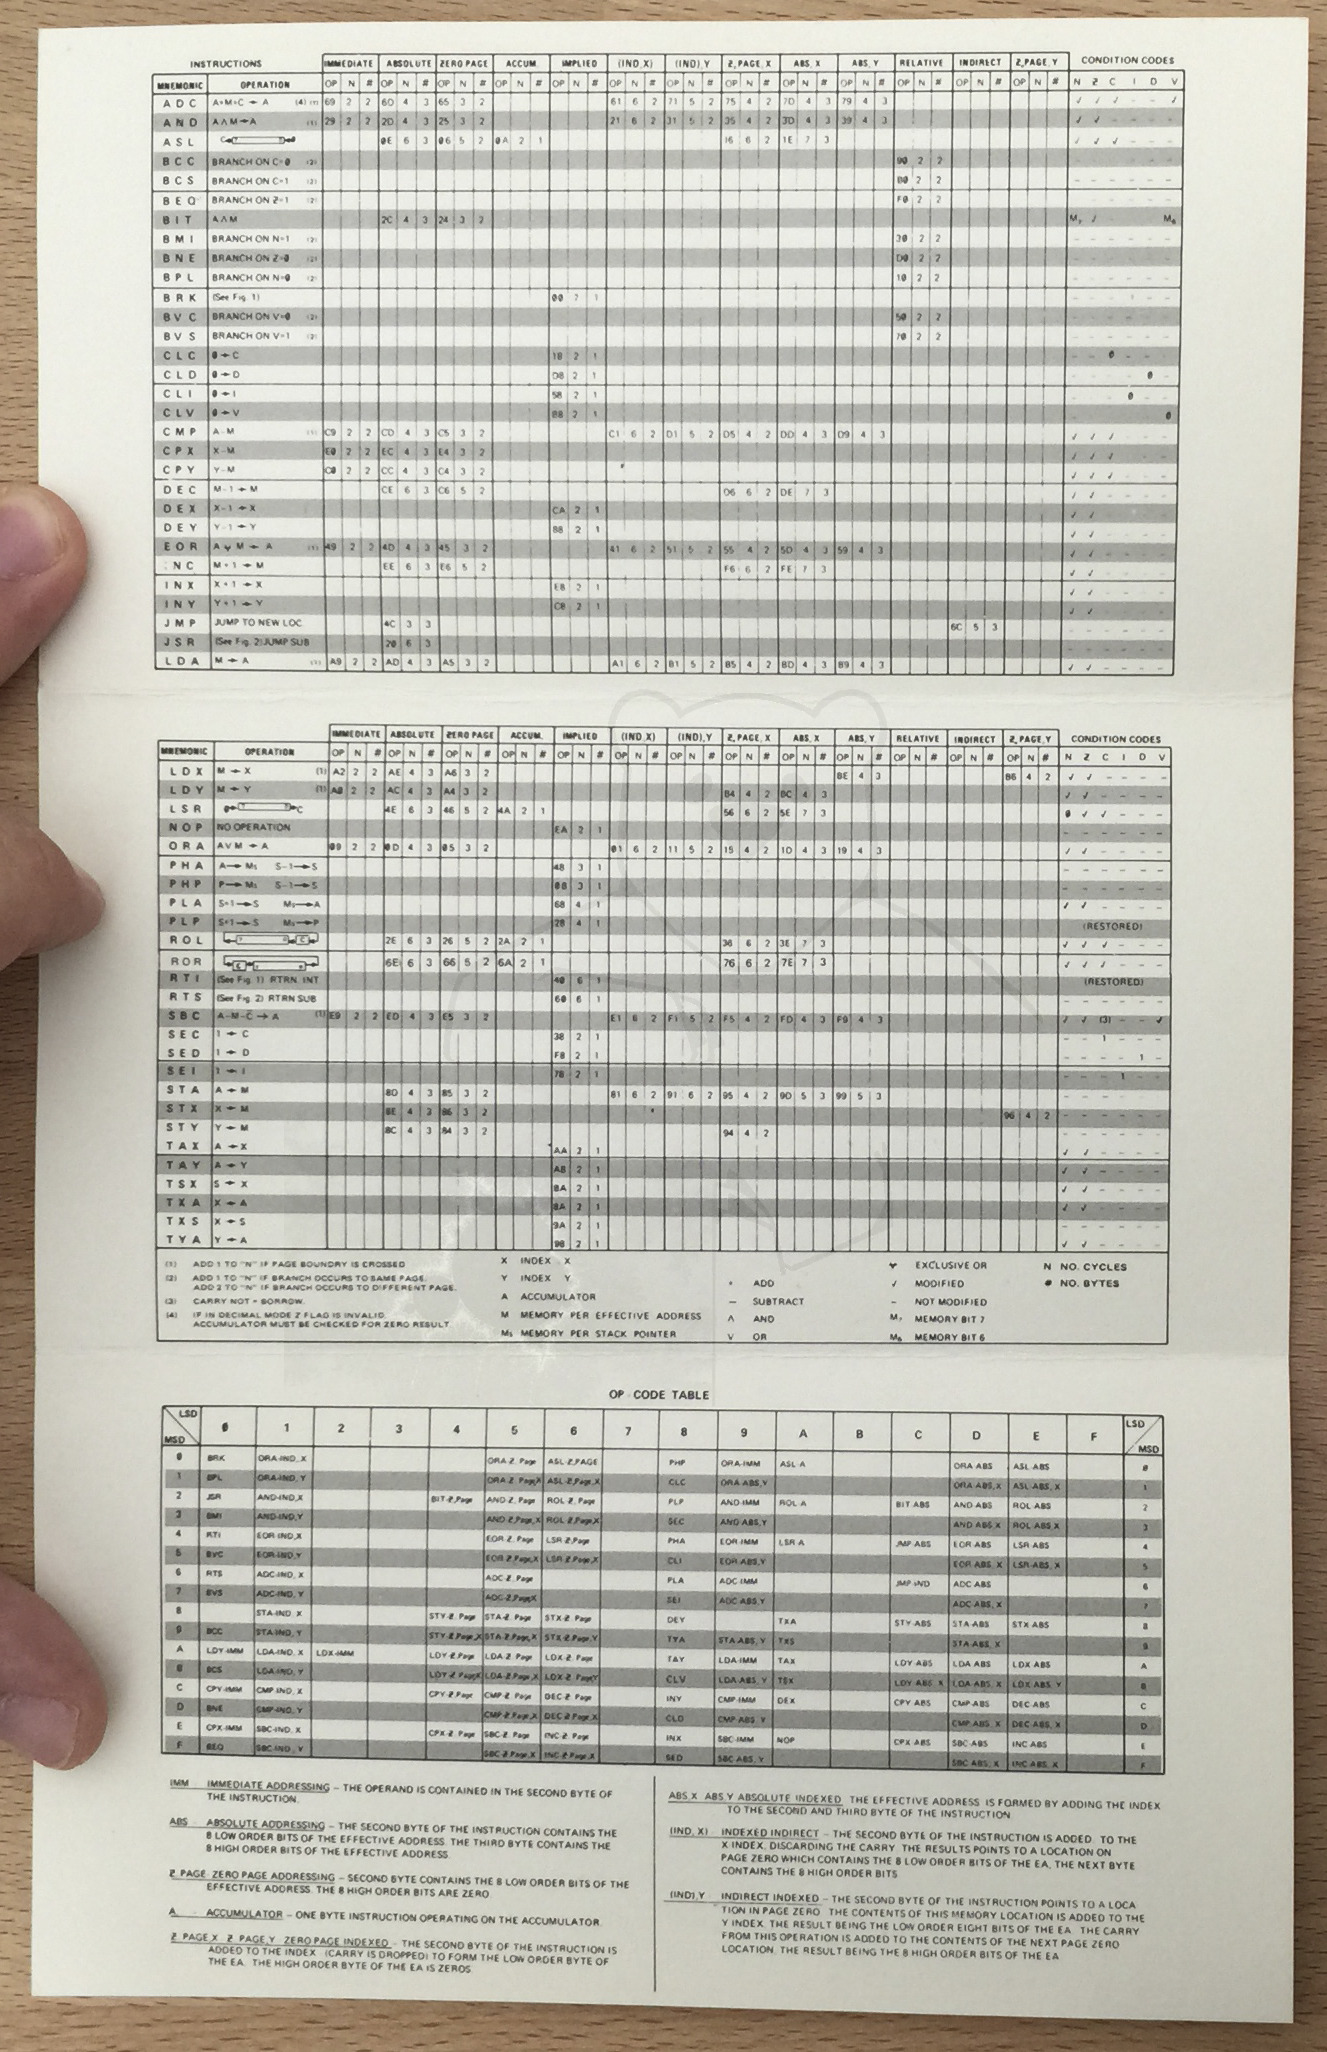 Commodore MOS KIM-1 - Zusammenfassung "6502 Instruction Set"